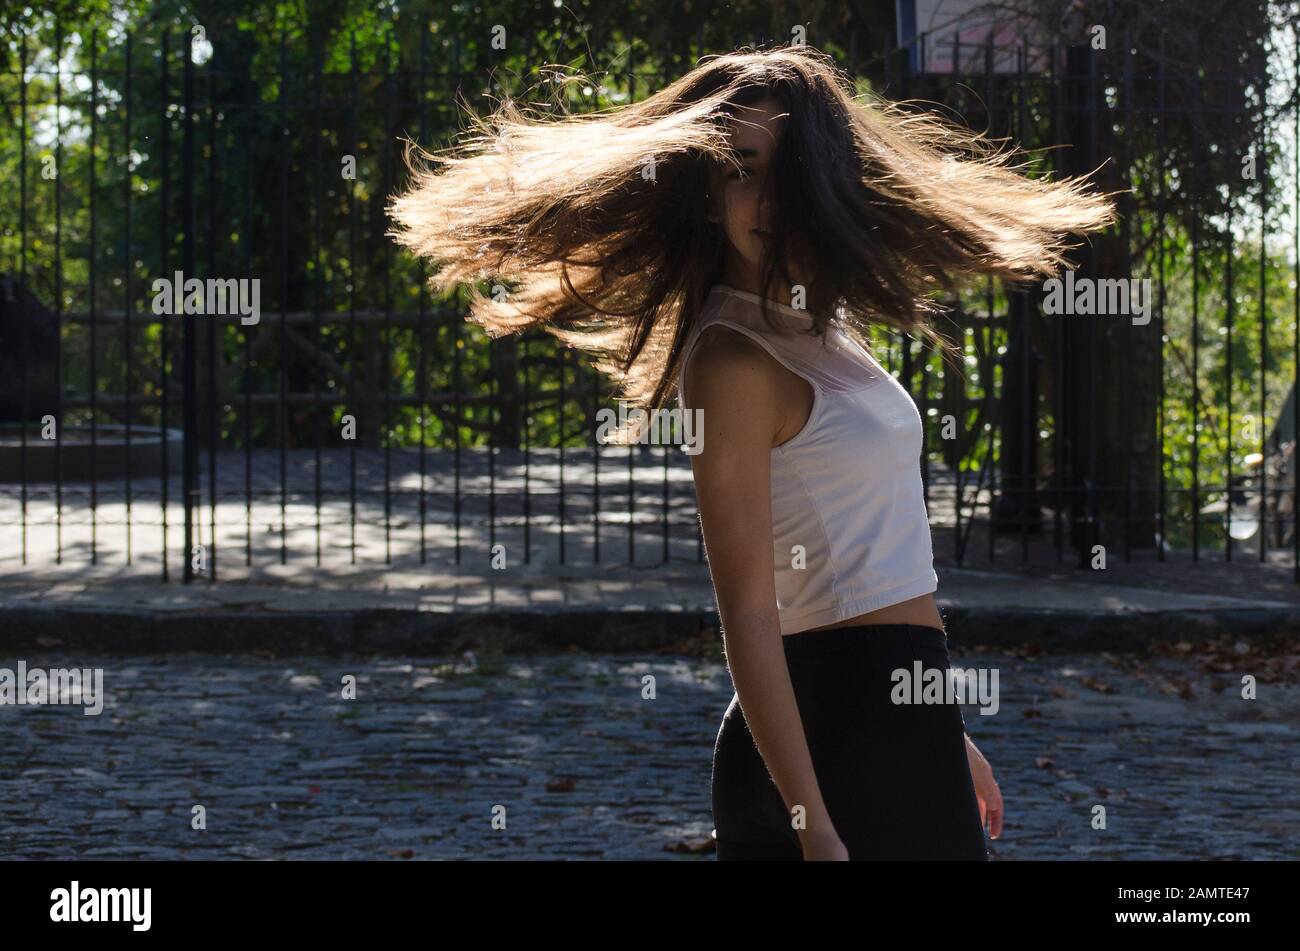 Adolescente de pie en la calle girando alrededor, Argentina Foto de stock